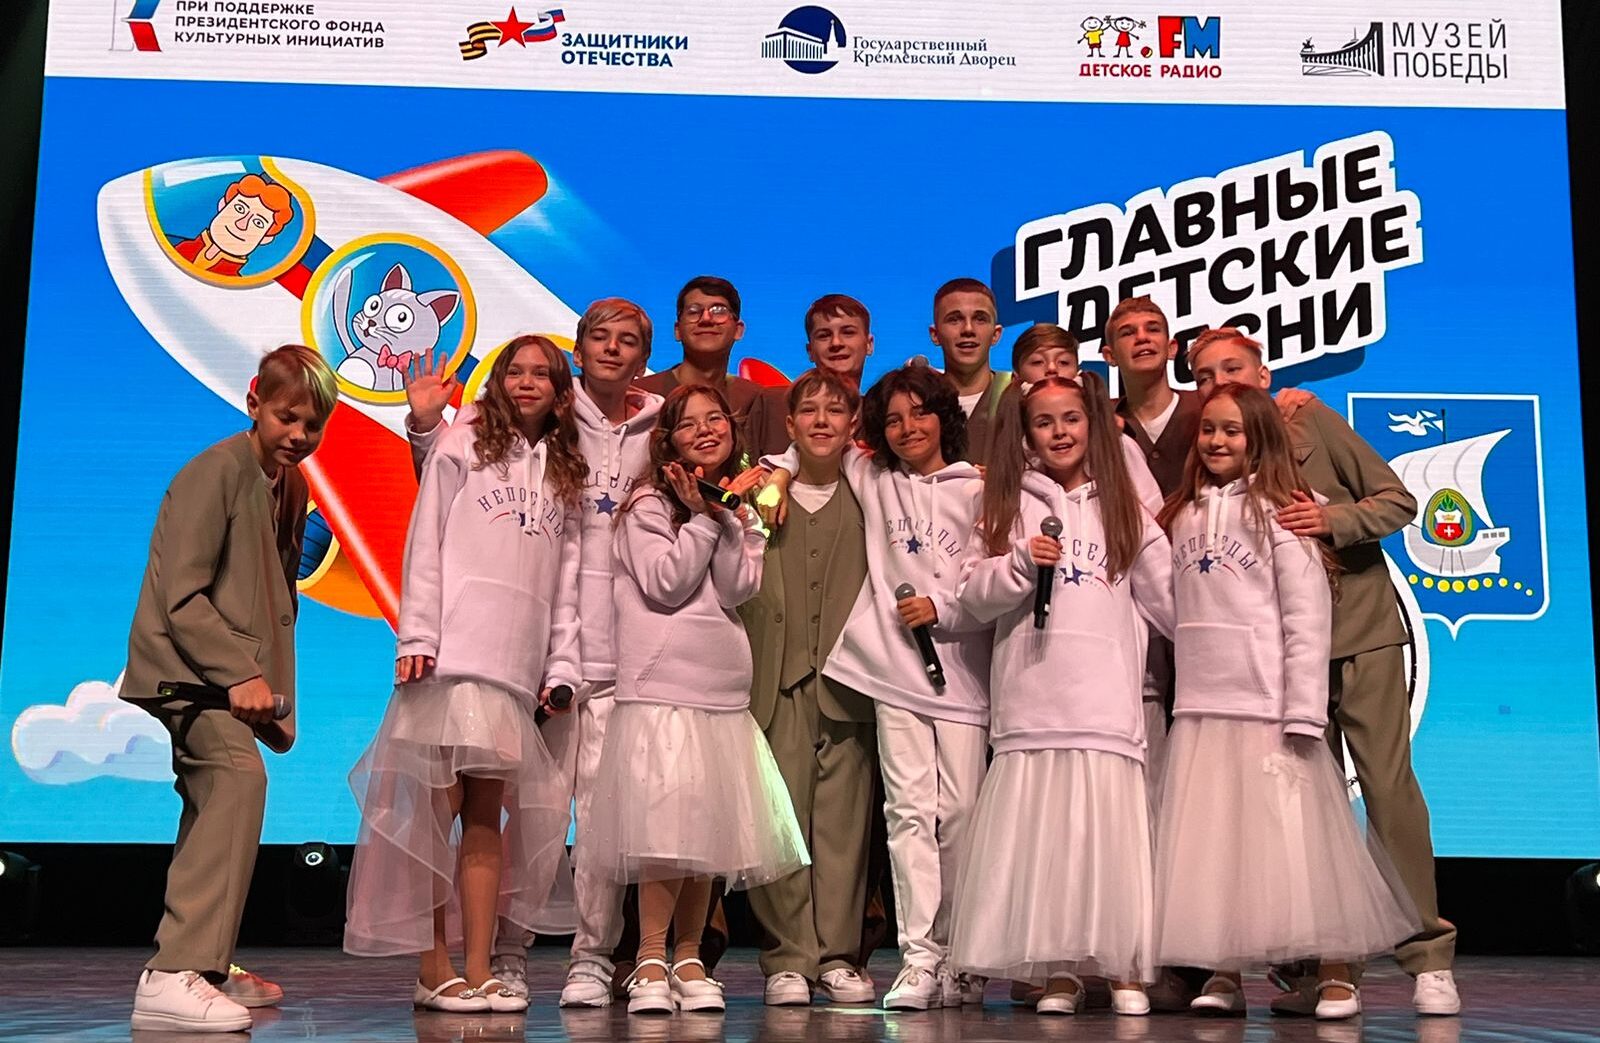 «Главные детские песни» приедут в Нижний Новгород